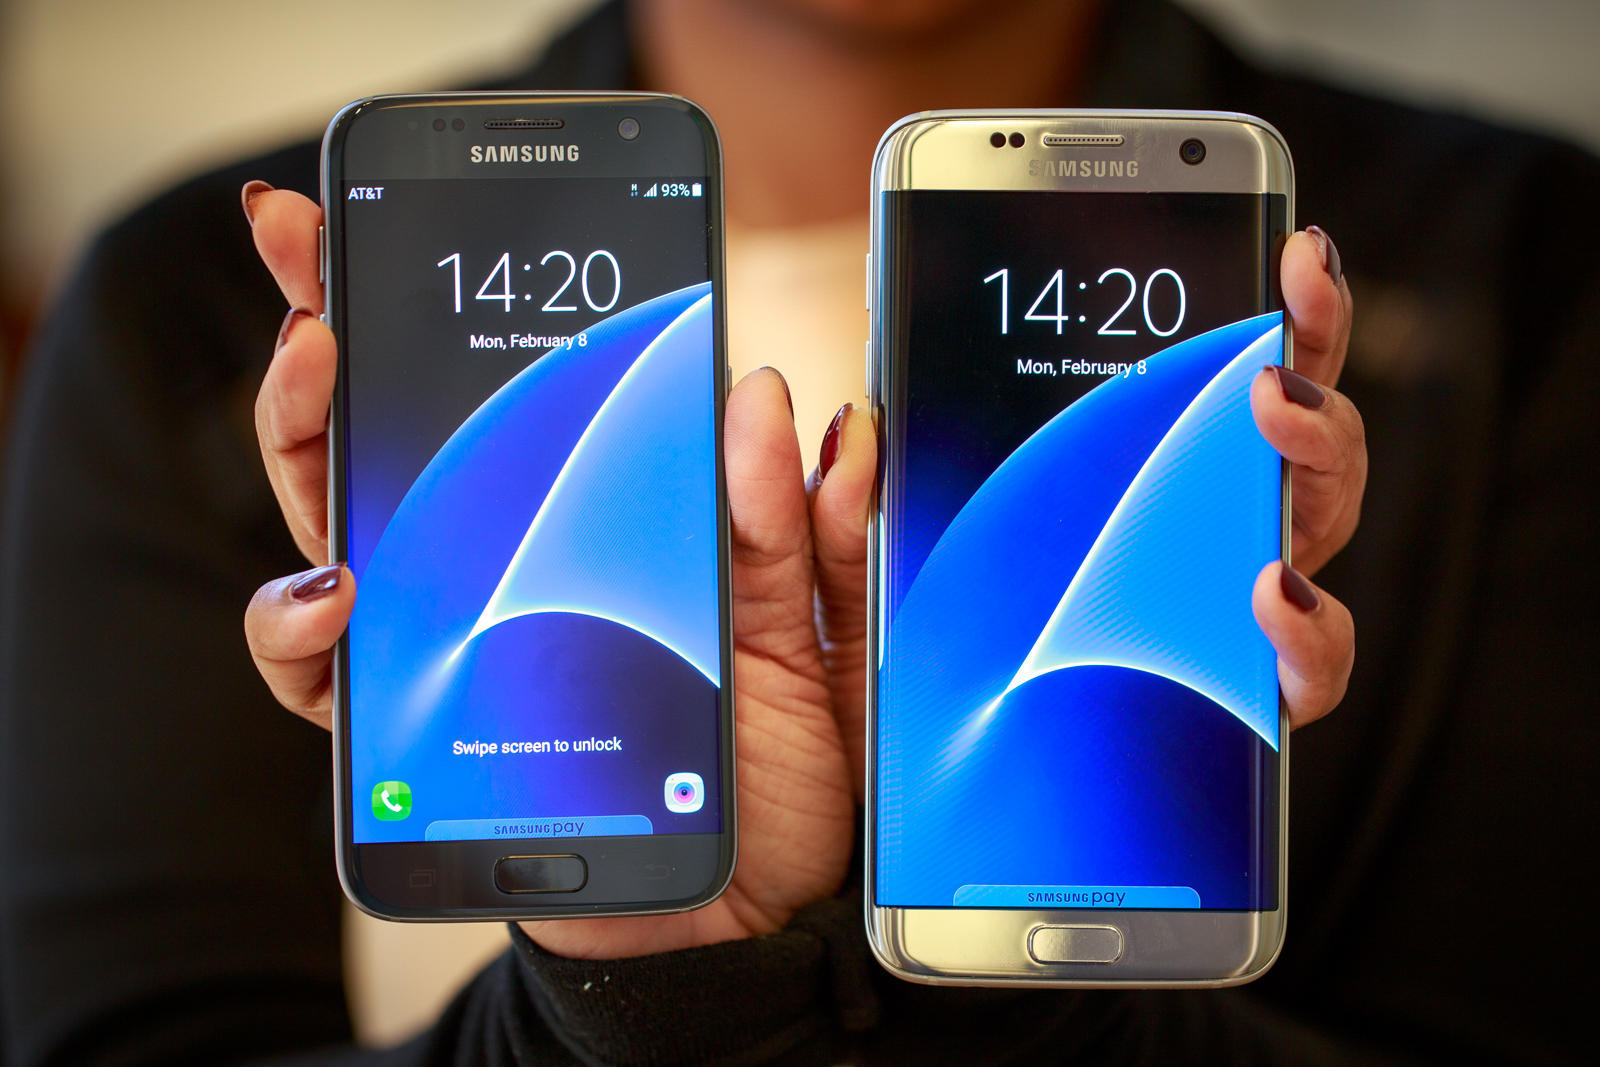 Galaxy S7 edge（右）はGalaxy S7よりも大きく、追加機能を搭載している。